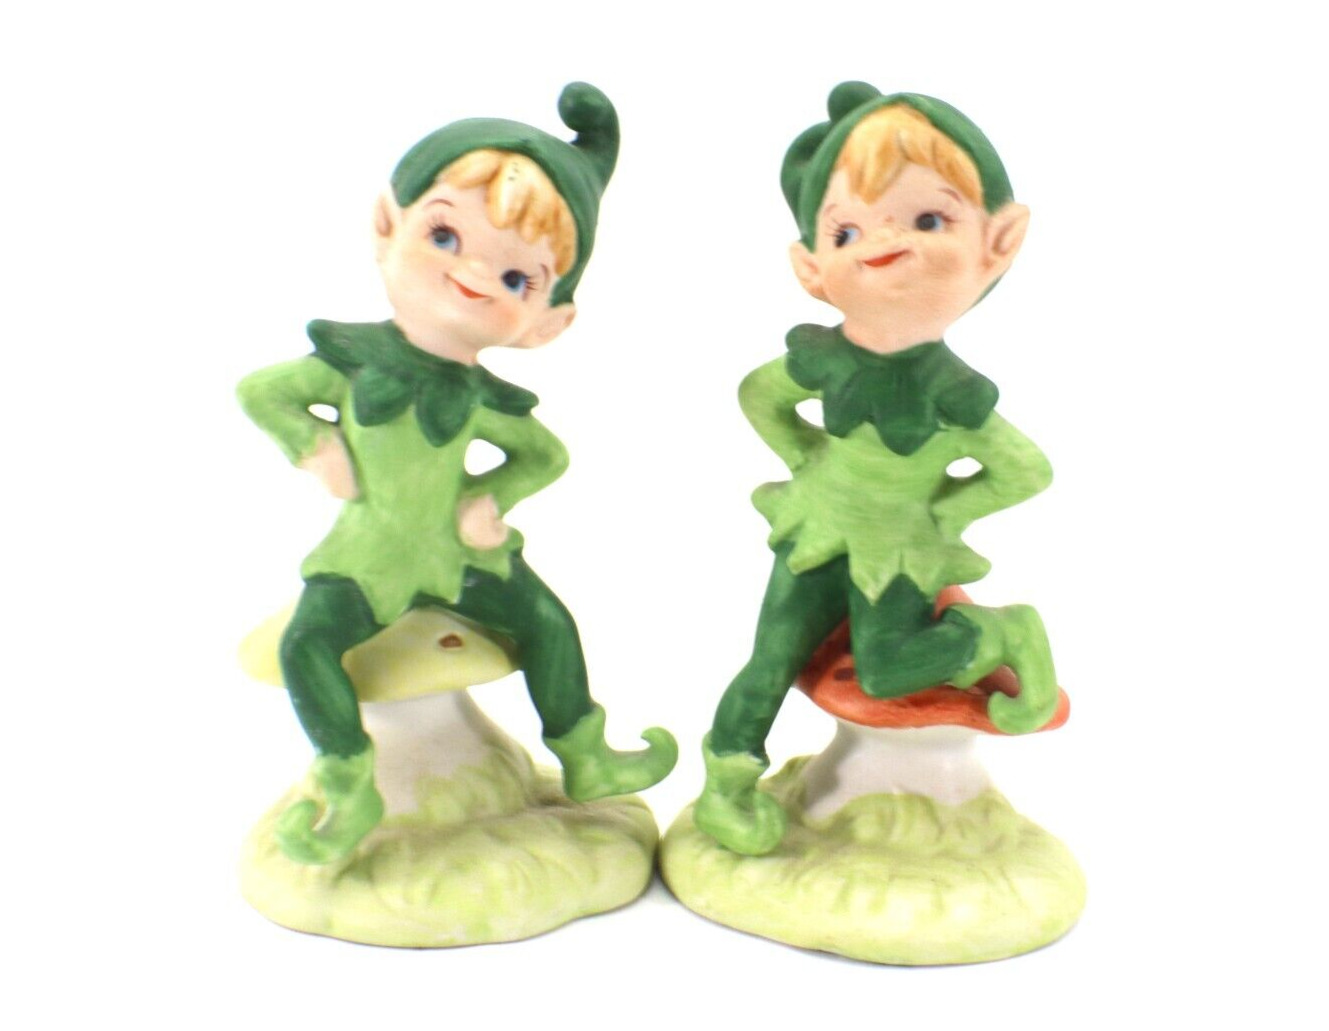  Pixi Elf Figurines Set of 2 Sitting on Mushrooms Hand Painted 1988 Vintage